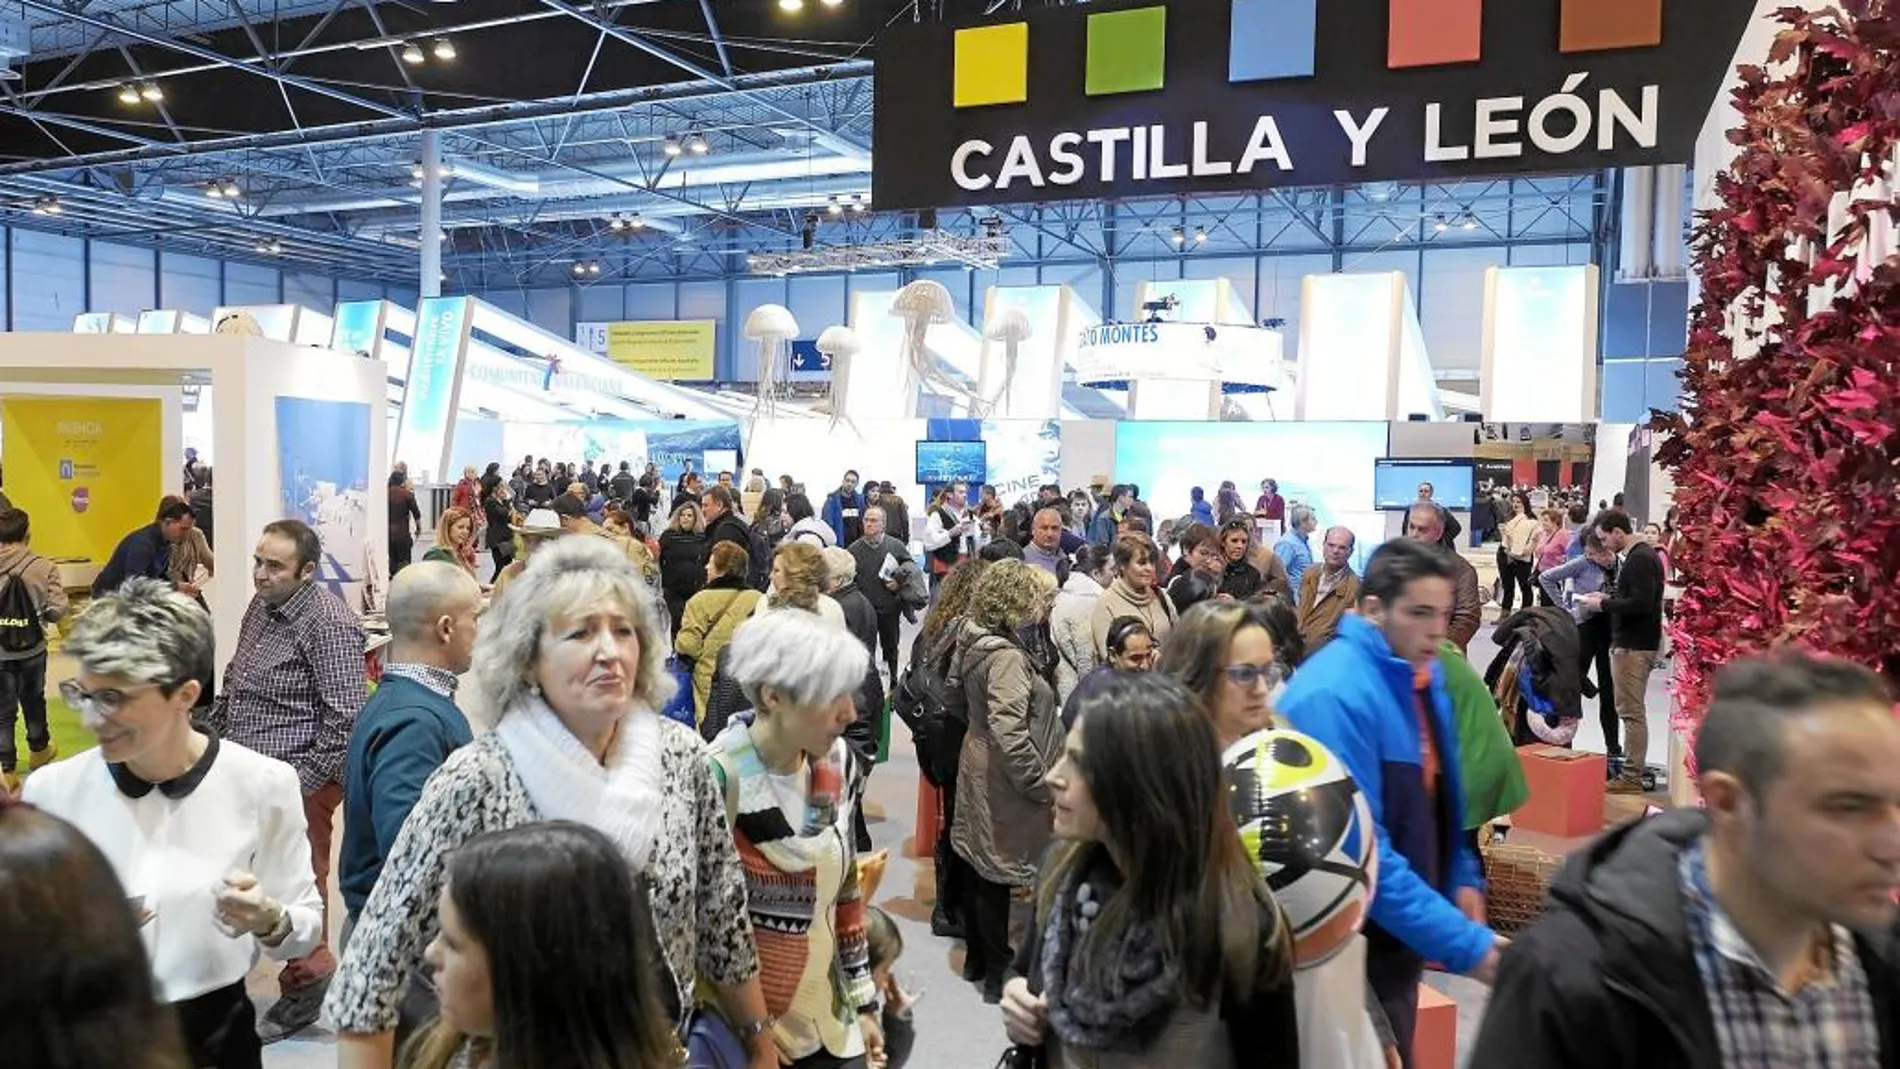 El stand de la Junta de Castilla y León en Fitur ha sido visitado por miles de personas que han disfrutado de la completa y variada oferta de actividades que se han desarrollado durante toda la semana